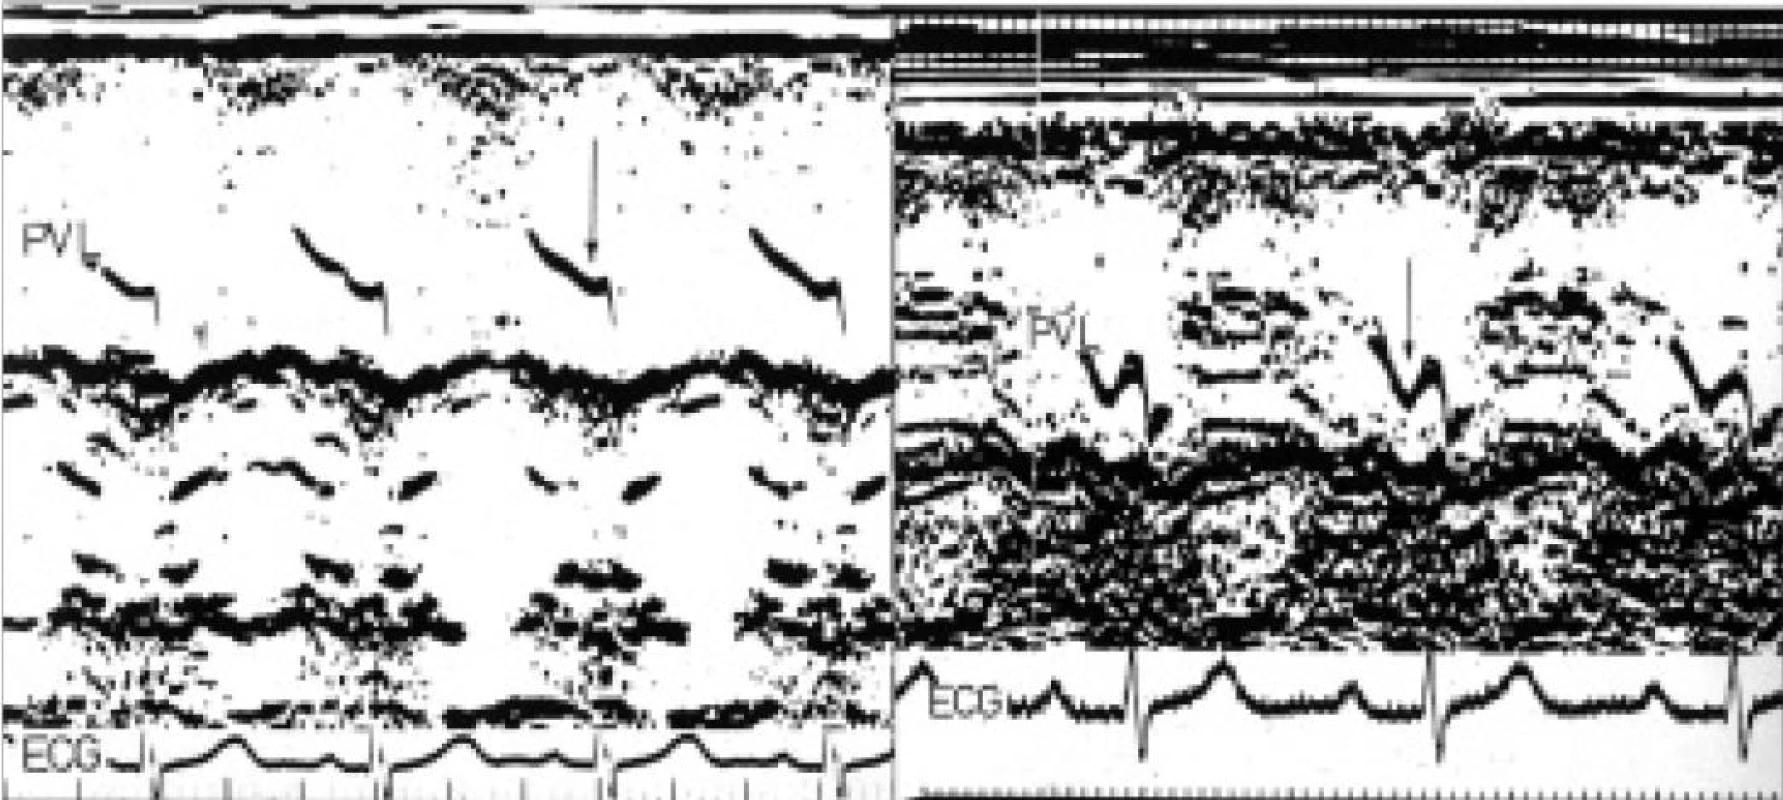 M-mode chlopně plicnice ukazuje normální sestupný dip (šipka na levém panelu) v síňové systole. Na pravém panelu je dip výrazný (šipka) a poukazuje na přítomnost široké vlny „a“ pravé komory u pacienta s těžkou stenózou plicnice.